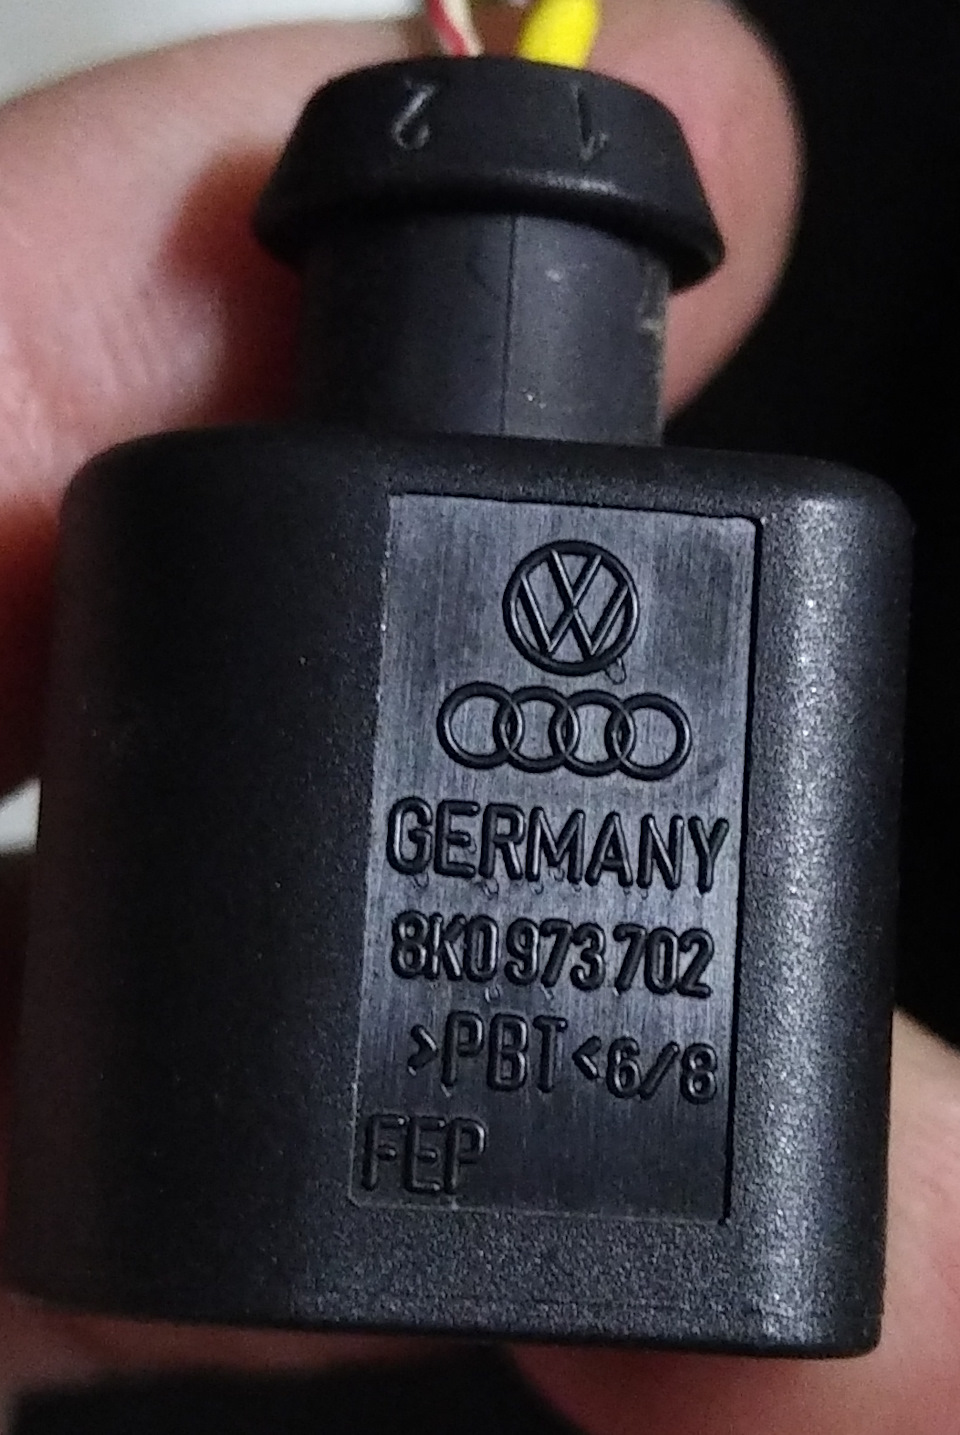 Запчасти на фото: 8K0973702. Фото в бортжурнале Audi Q5 (1G)